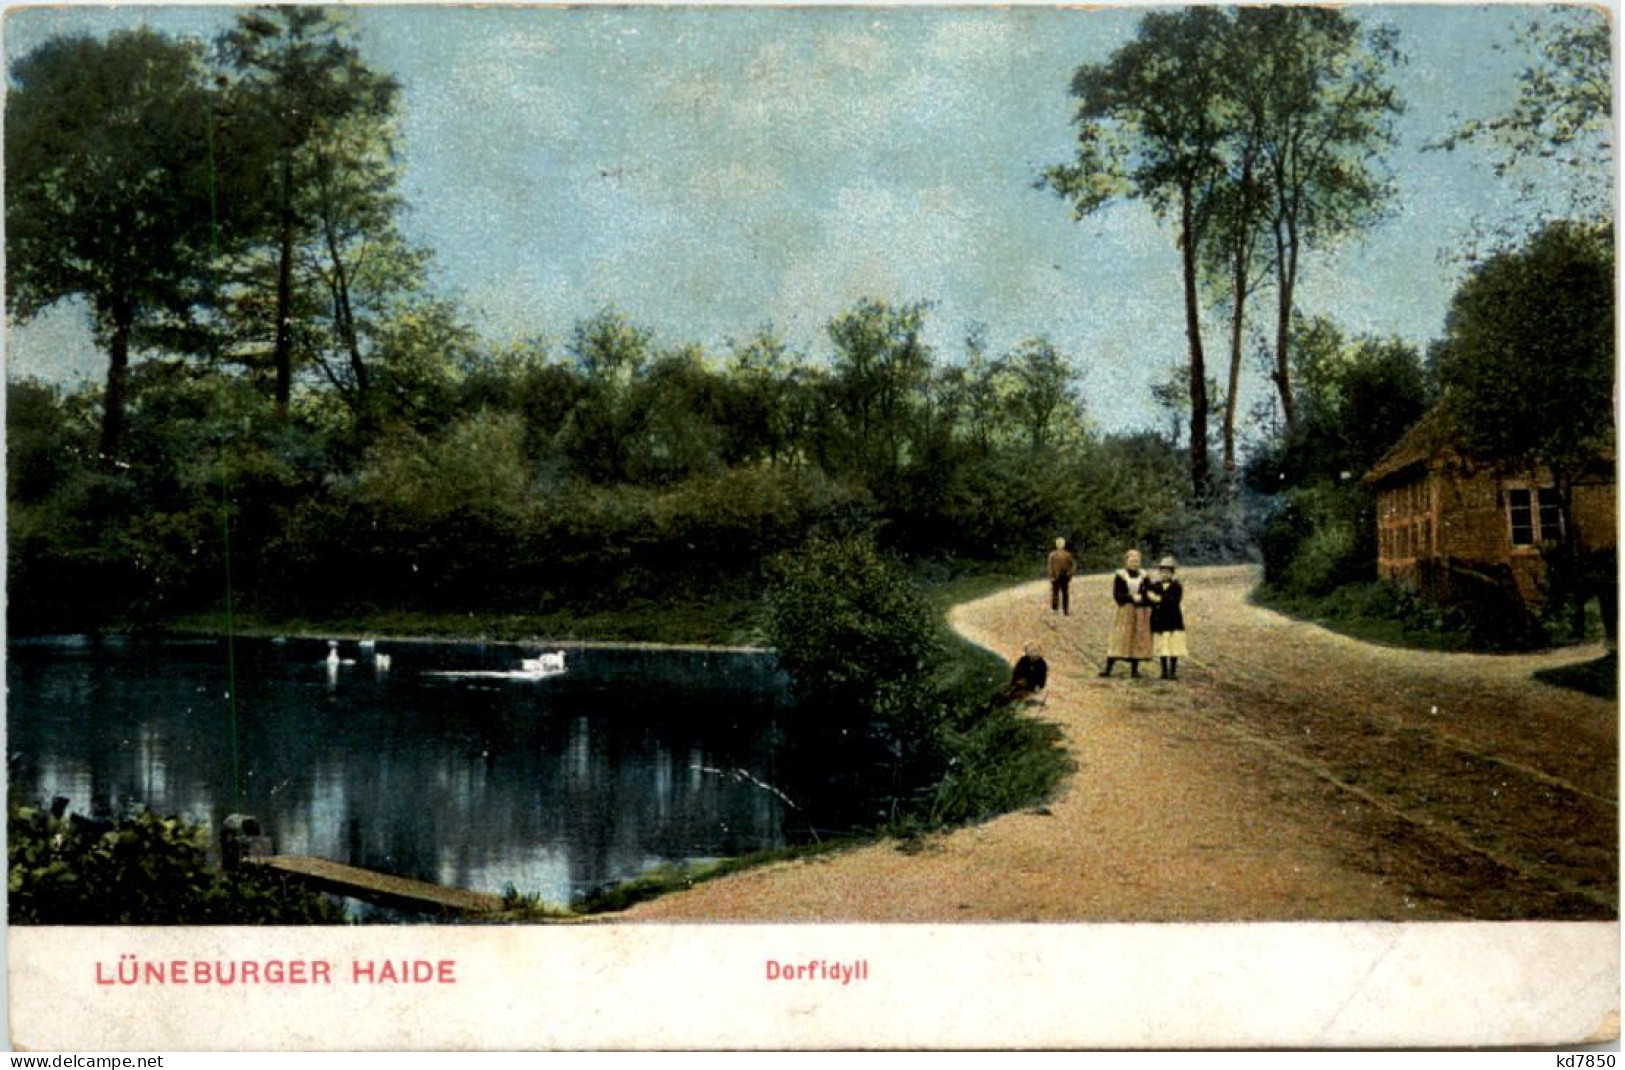 Lüneburger Haide, Dorfidyll - Lüneburg